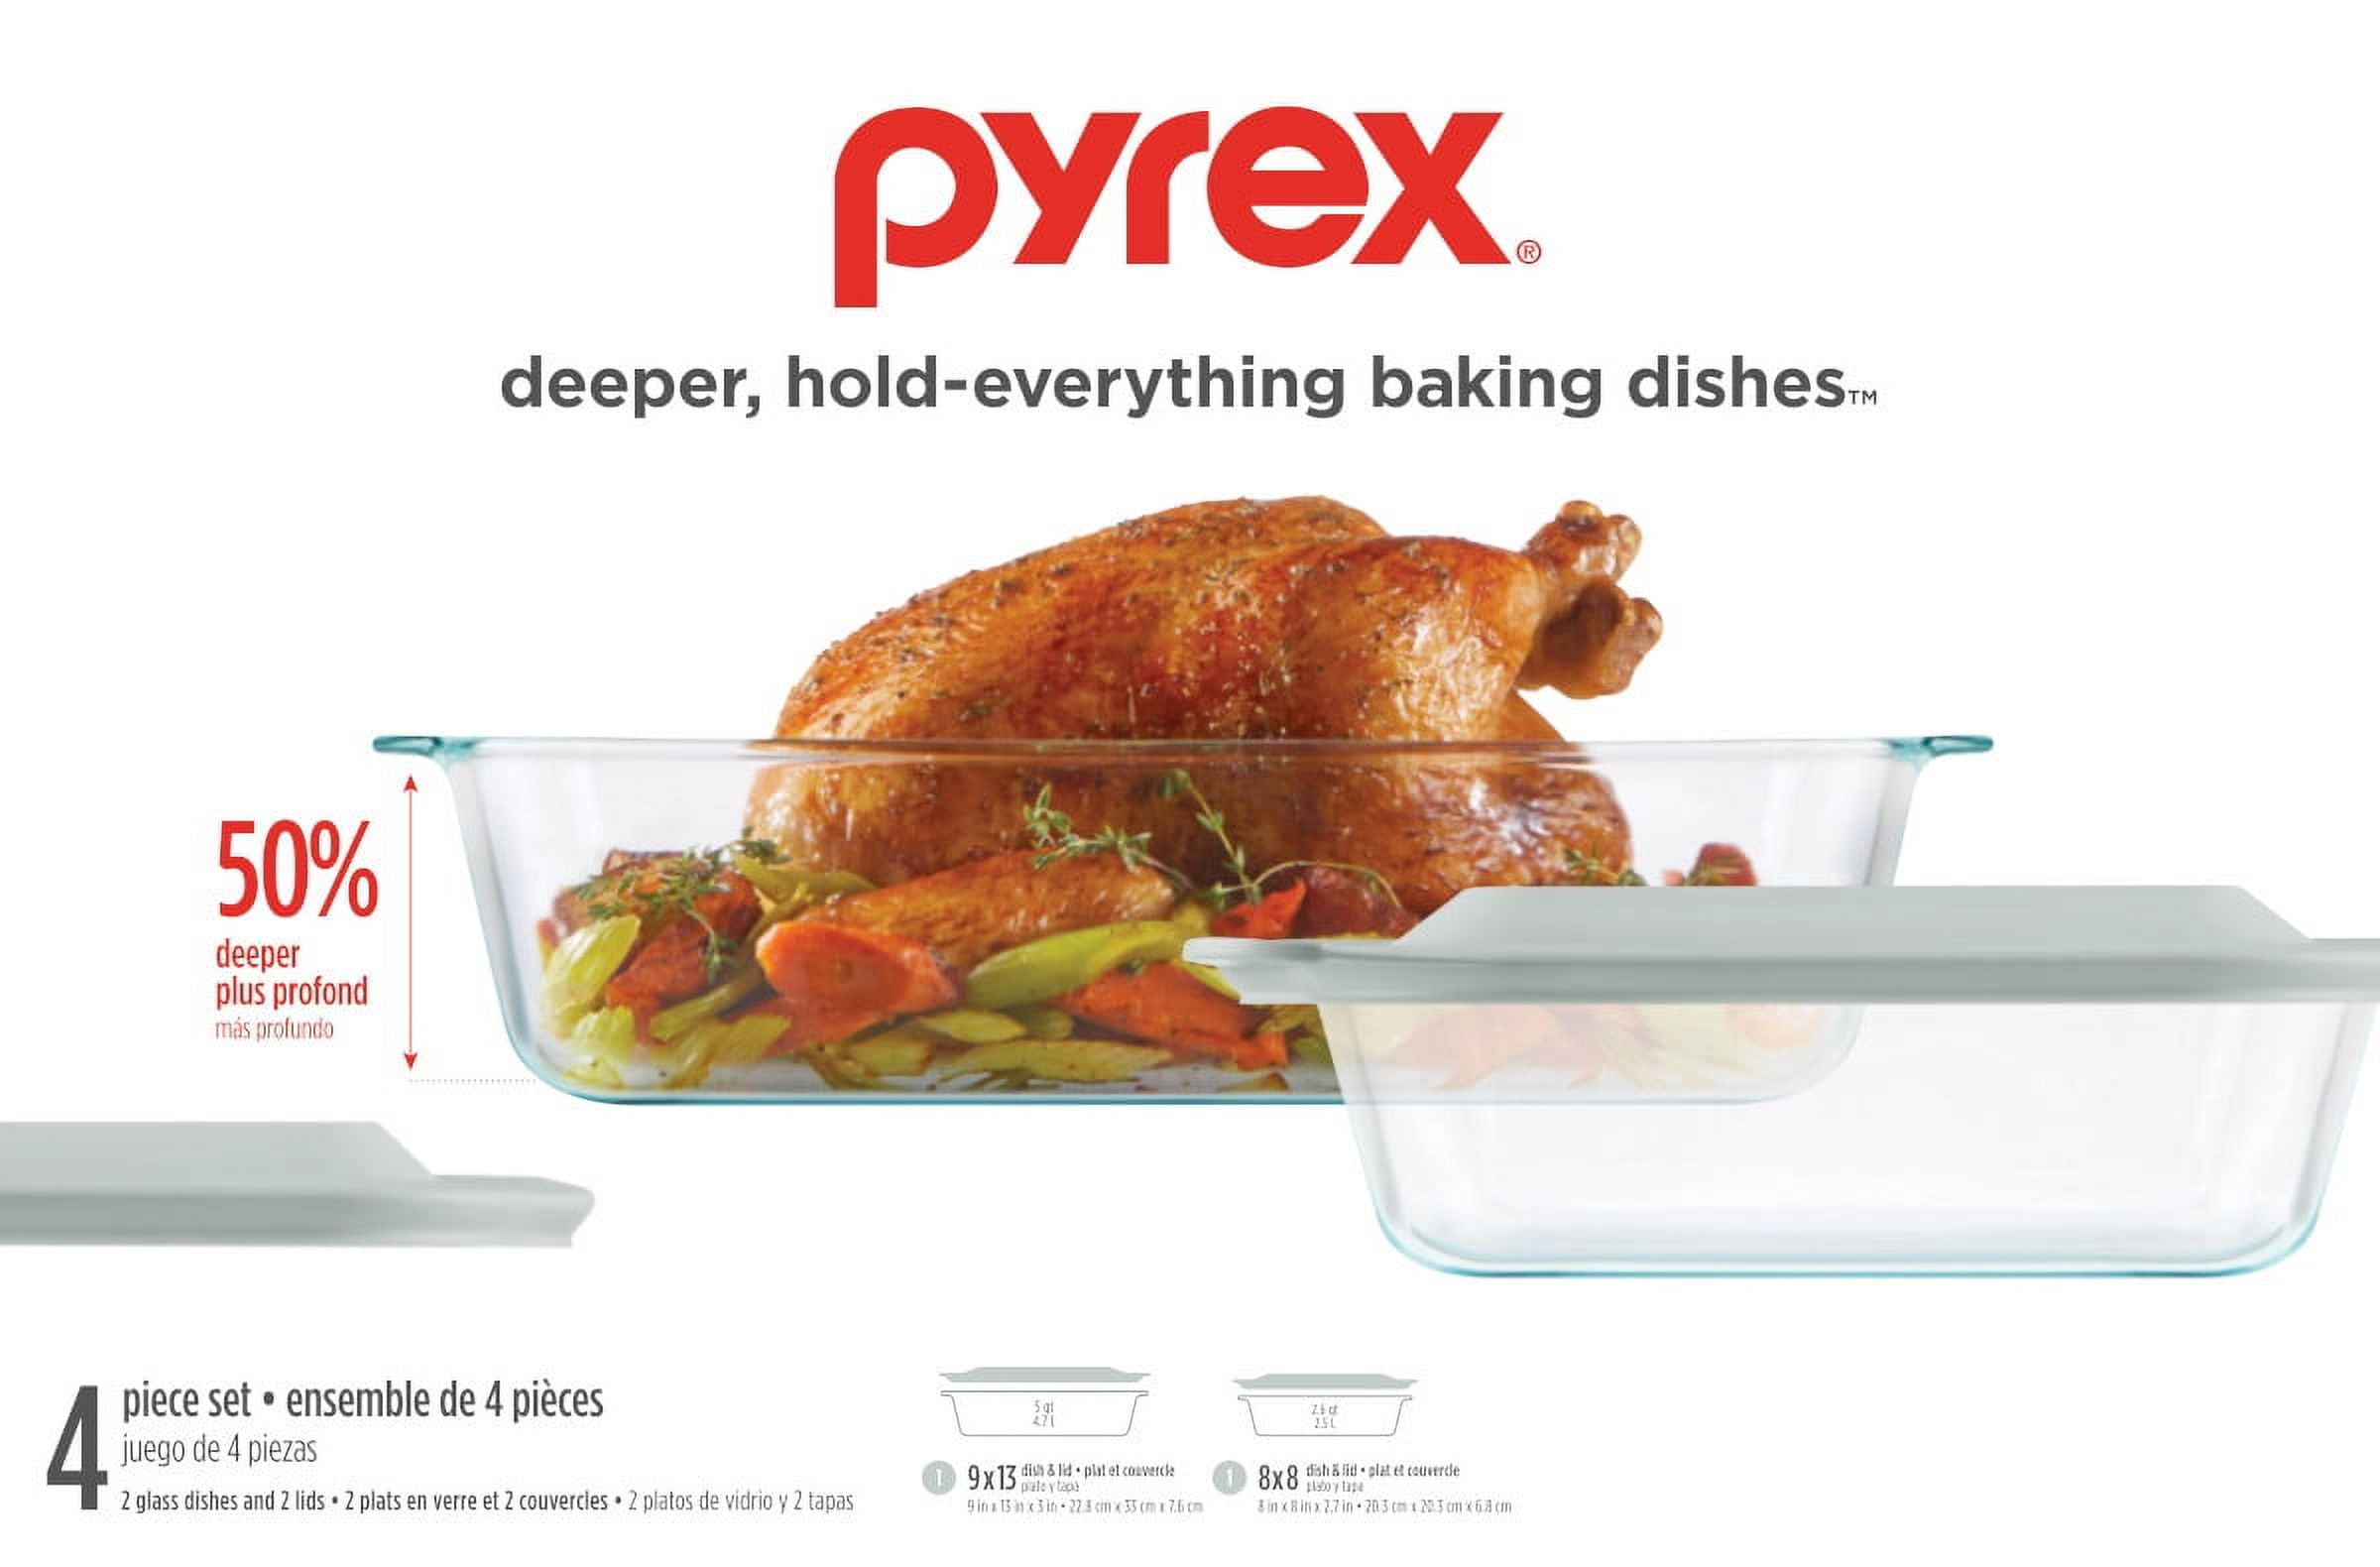 PYREX Set 4 Pc 2 Glass Baking Dish 3 Depth With 2 Lids 5 Qt 3.1